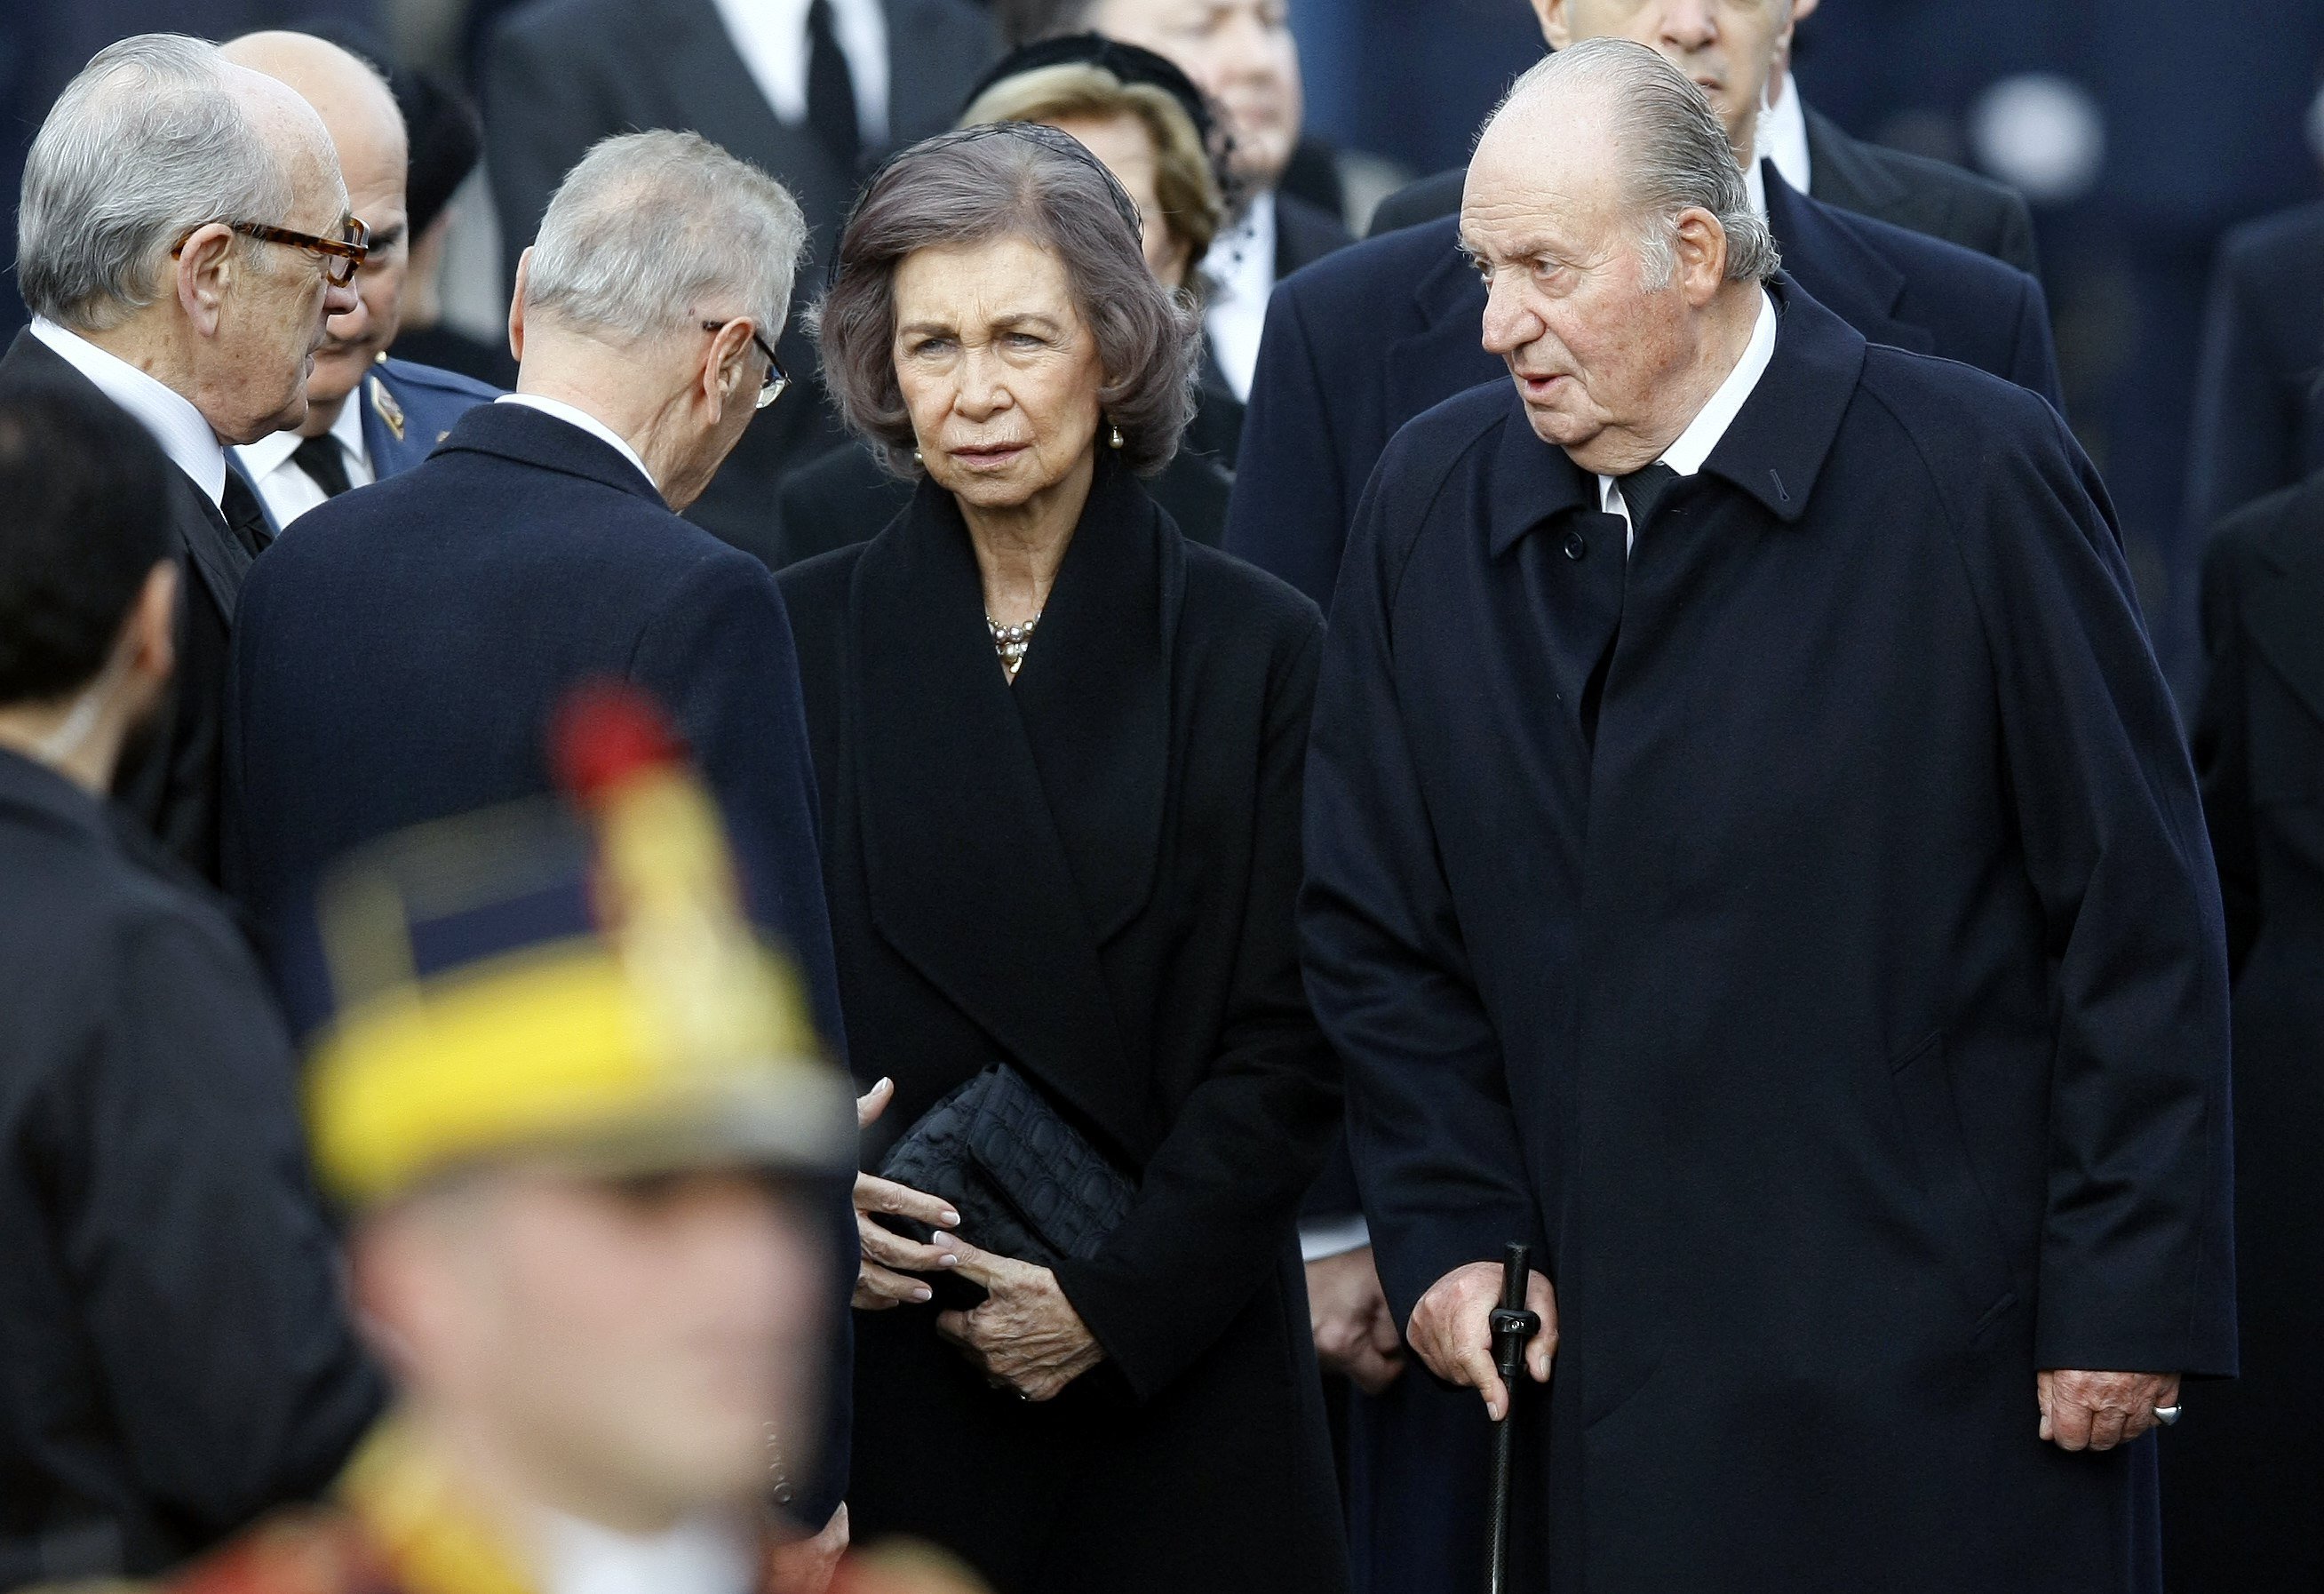 Joan Carles i Sofia ja només van junts als funerals